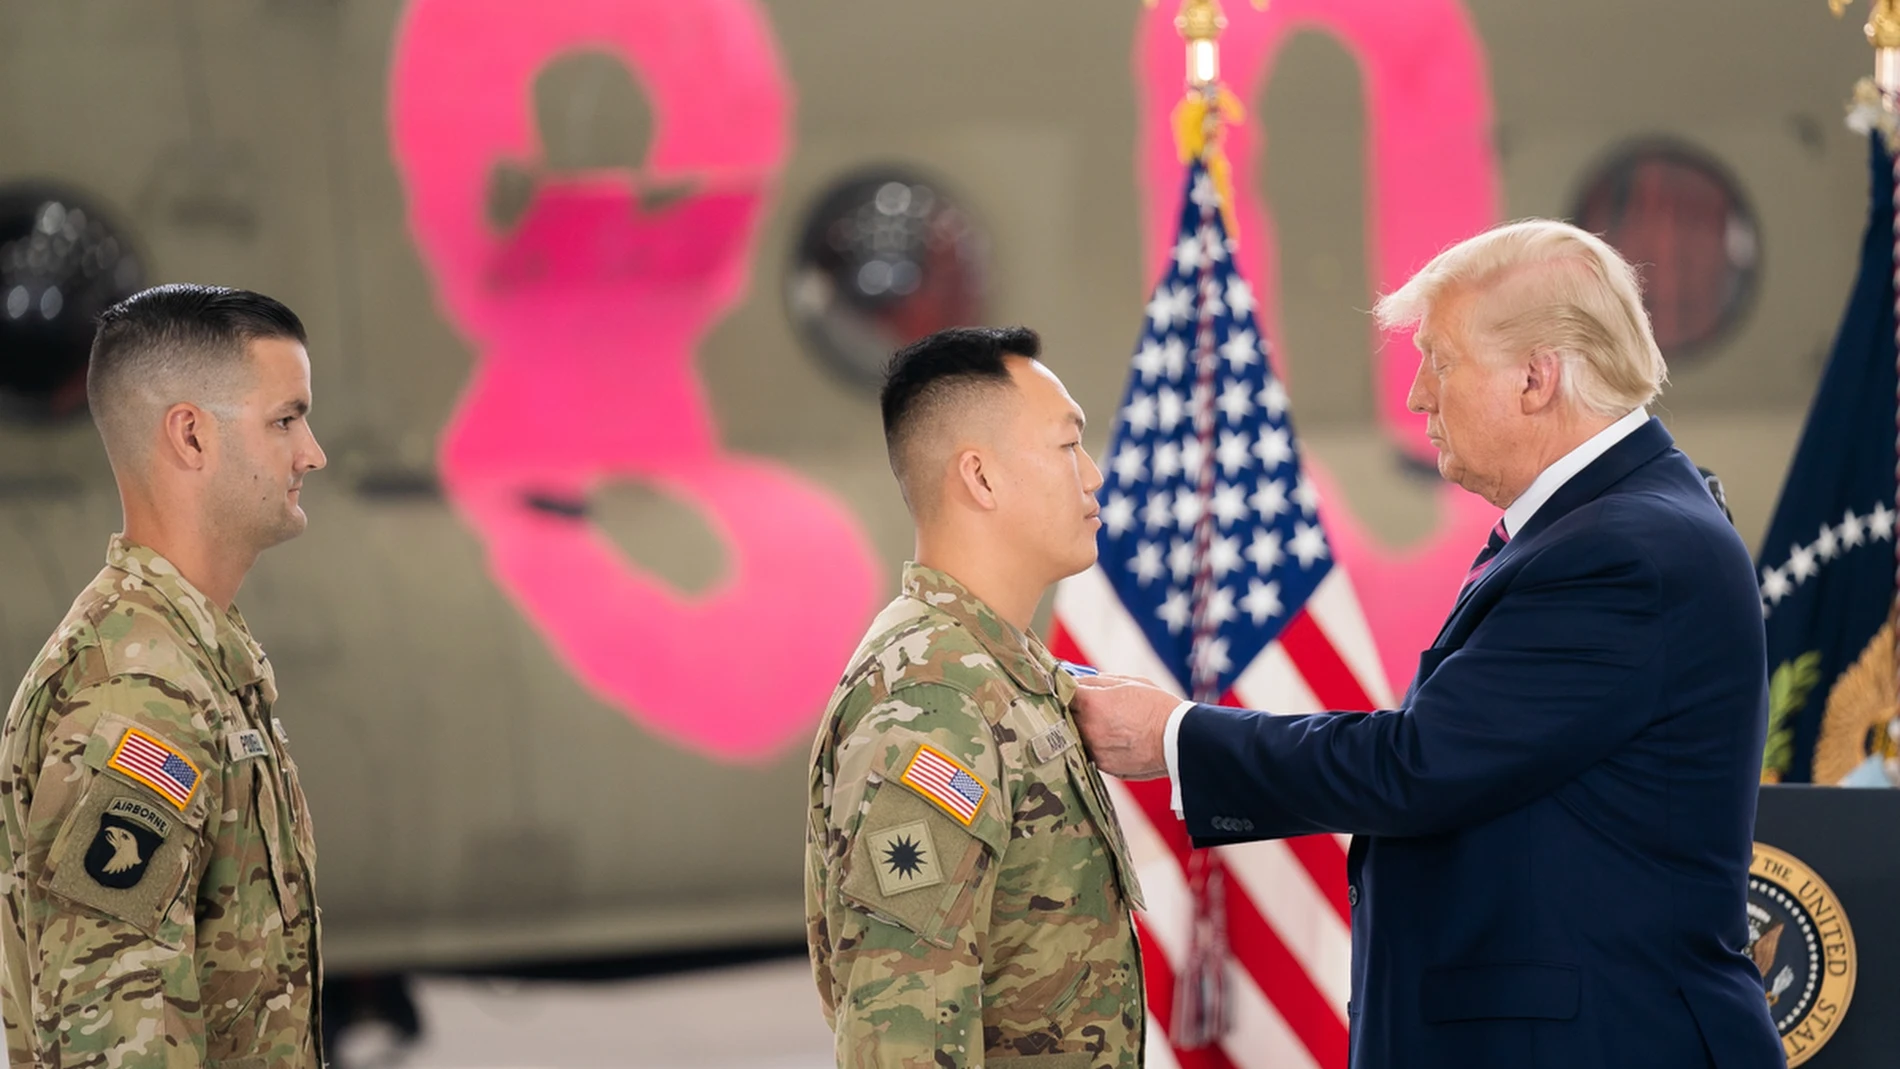 El presidente de Estados Unidos, Donald Trump, condecora a unos soldados en una base militar de California.08/10/2020